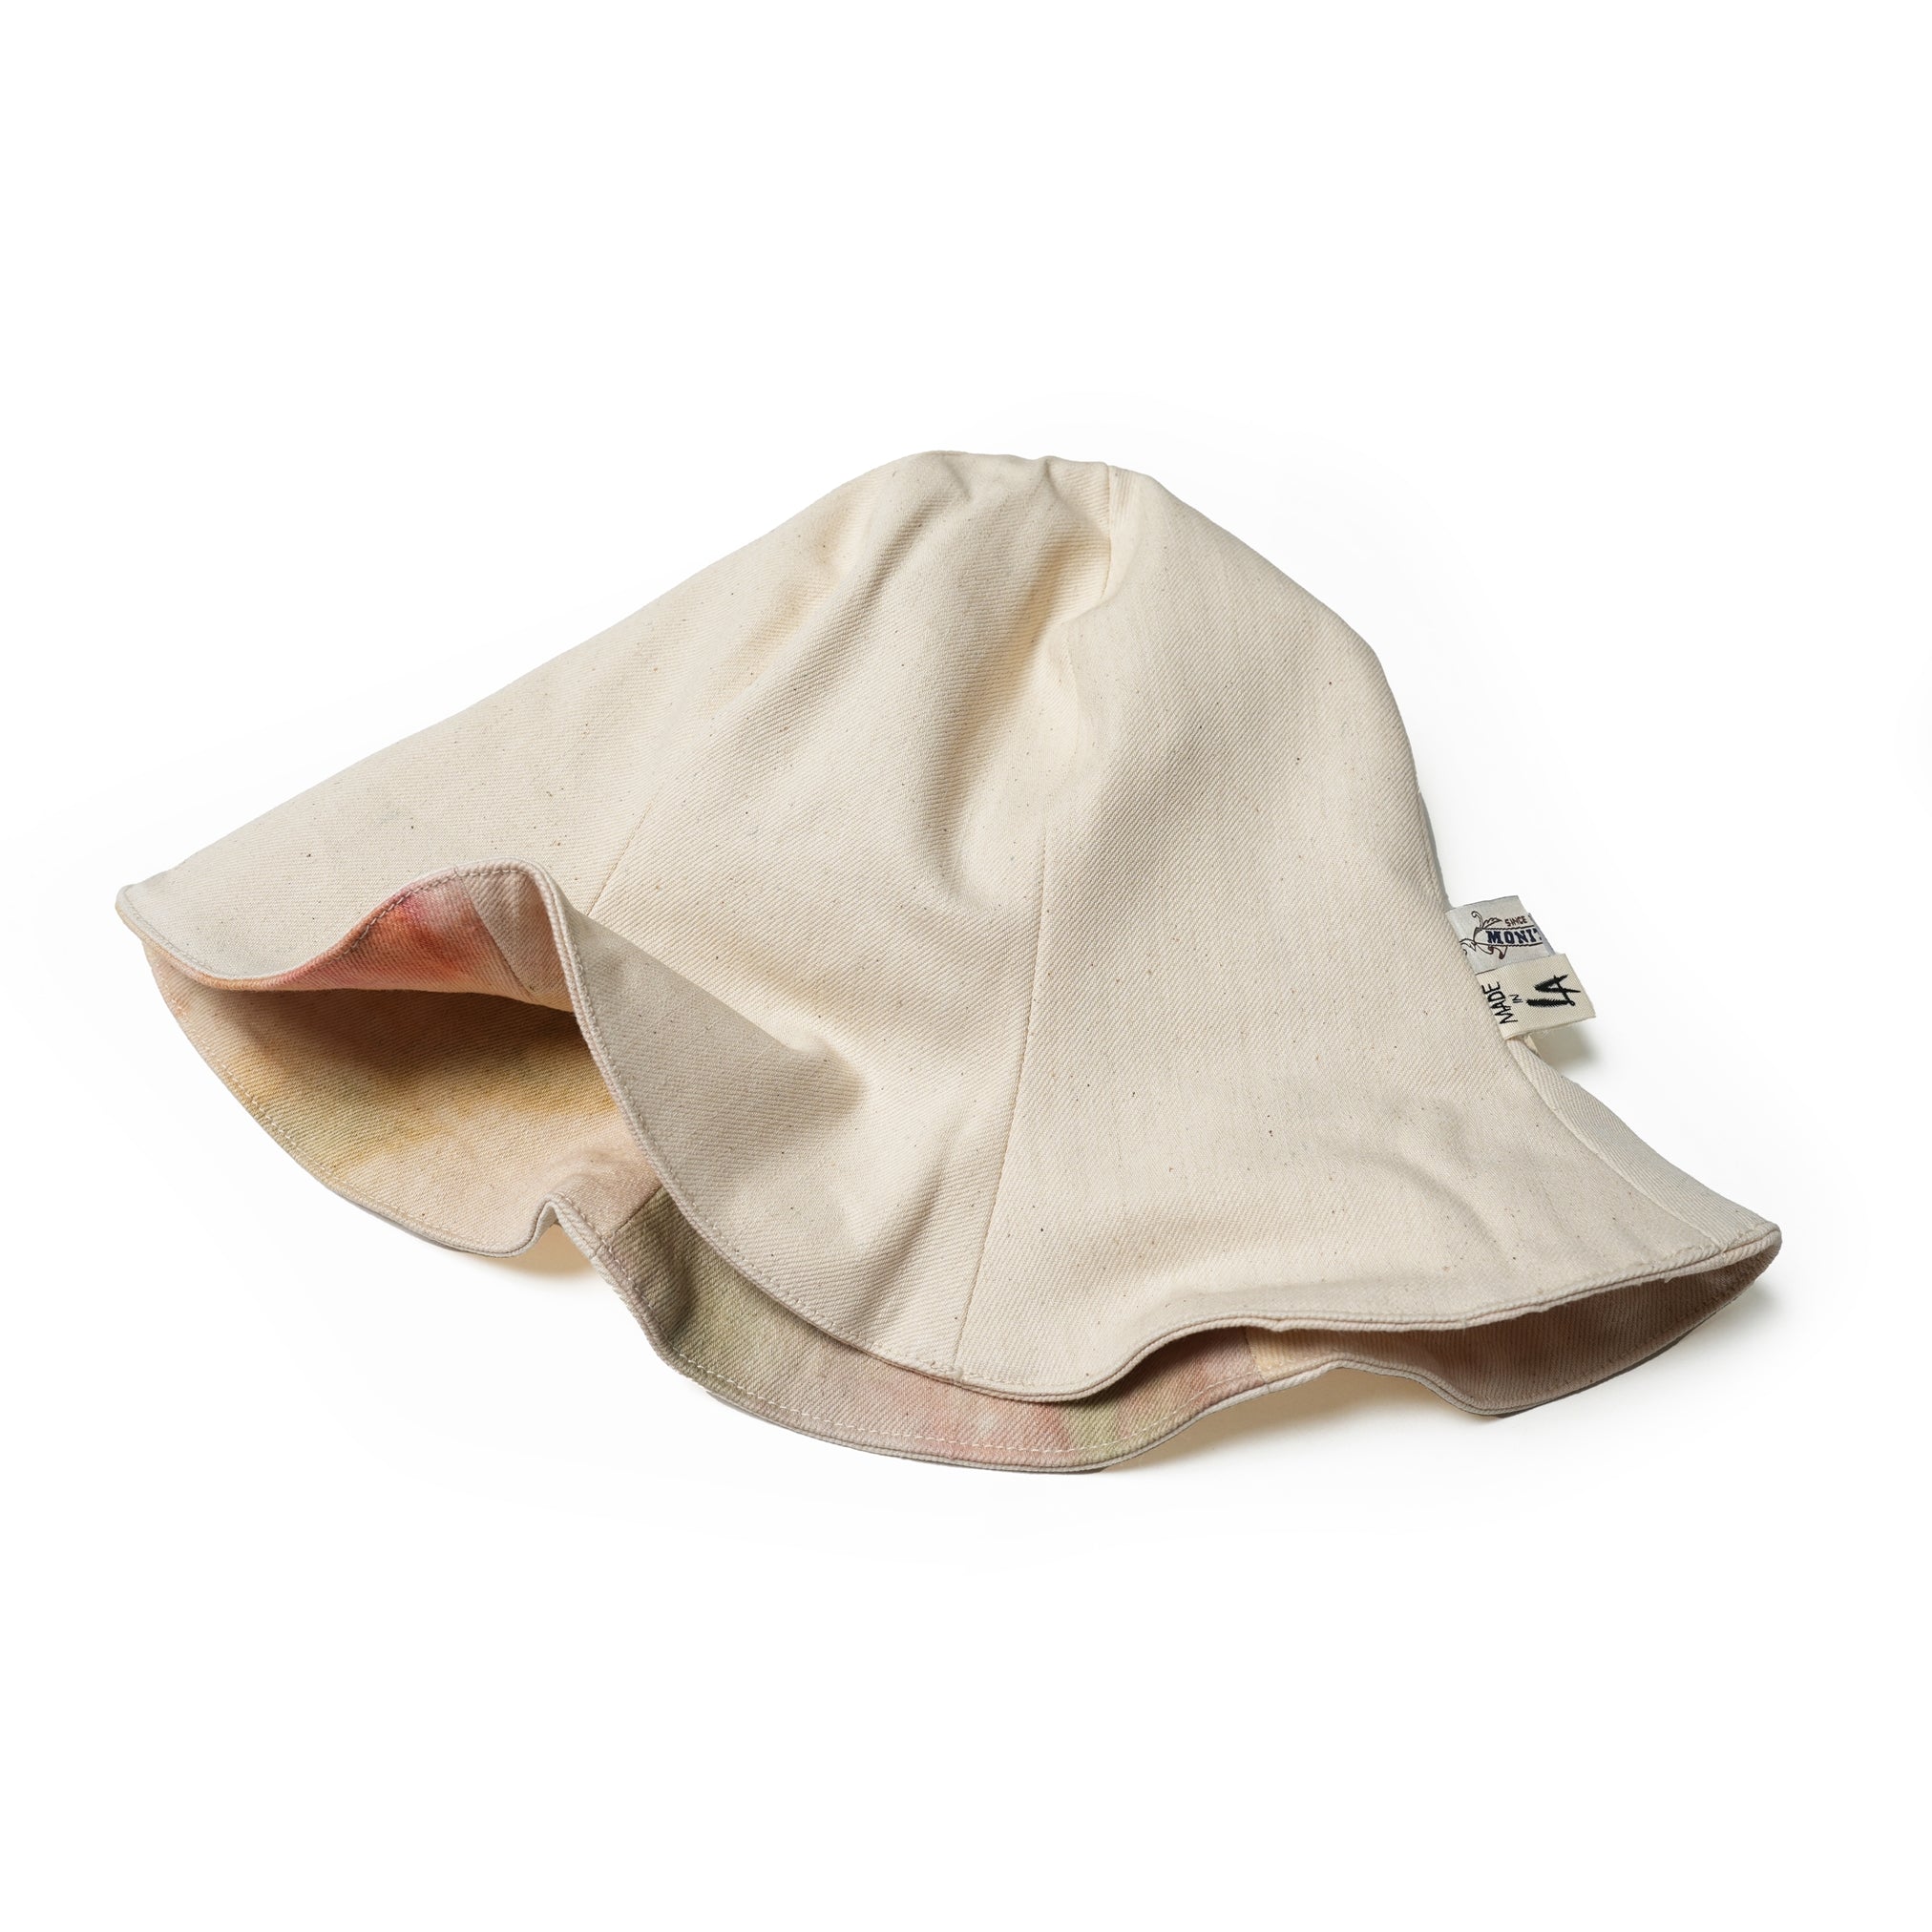 No:M31900-3 | Name:HAT | Color:Cone Natural Tie Dye Bull Denim【MONITALY_モニタリー】